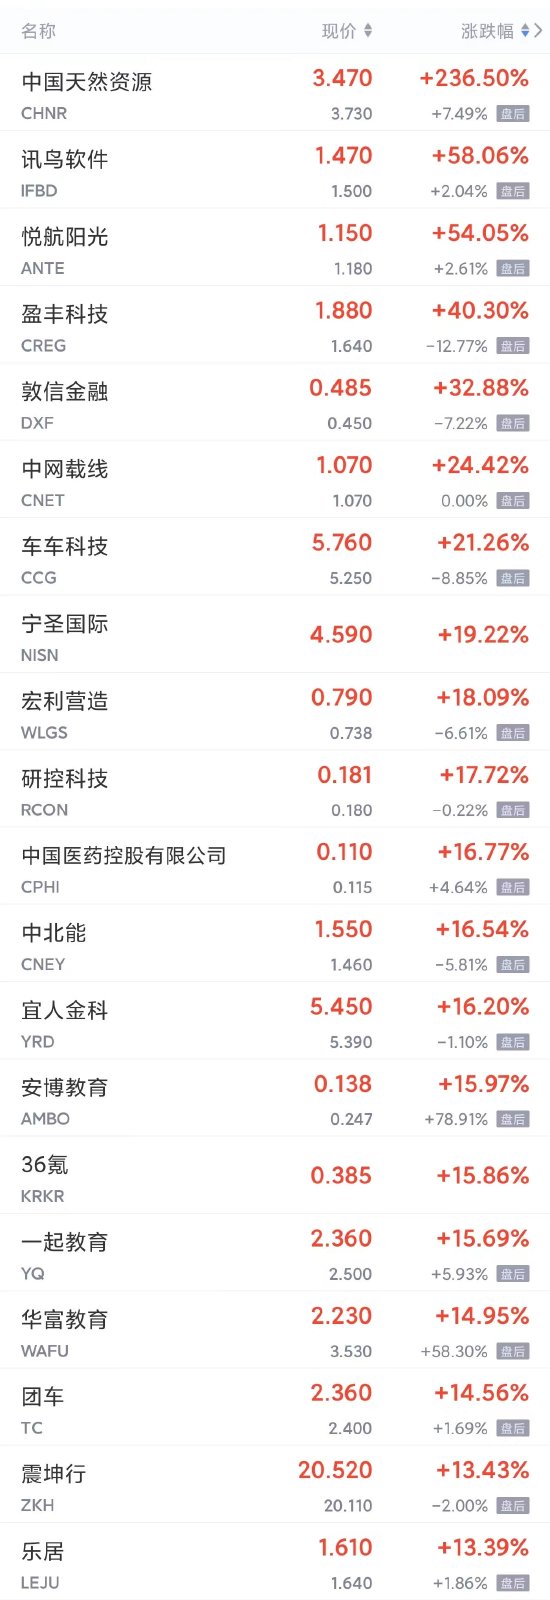 周四热门中概股多数上涨 拼多多涨逾2%，小鹏、理想、京东涨近2%